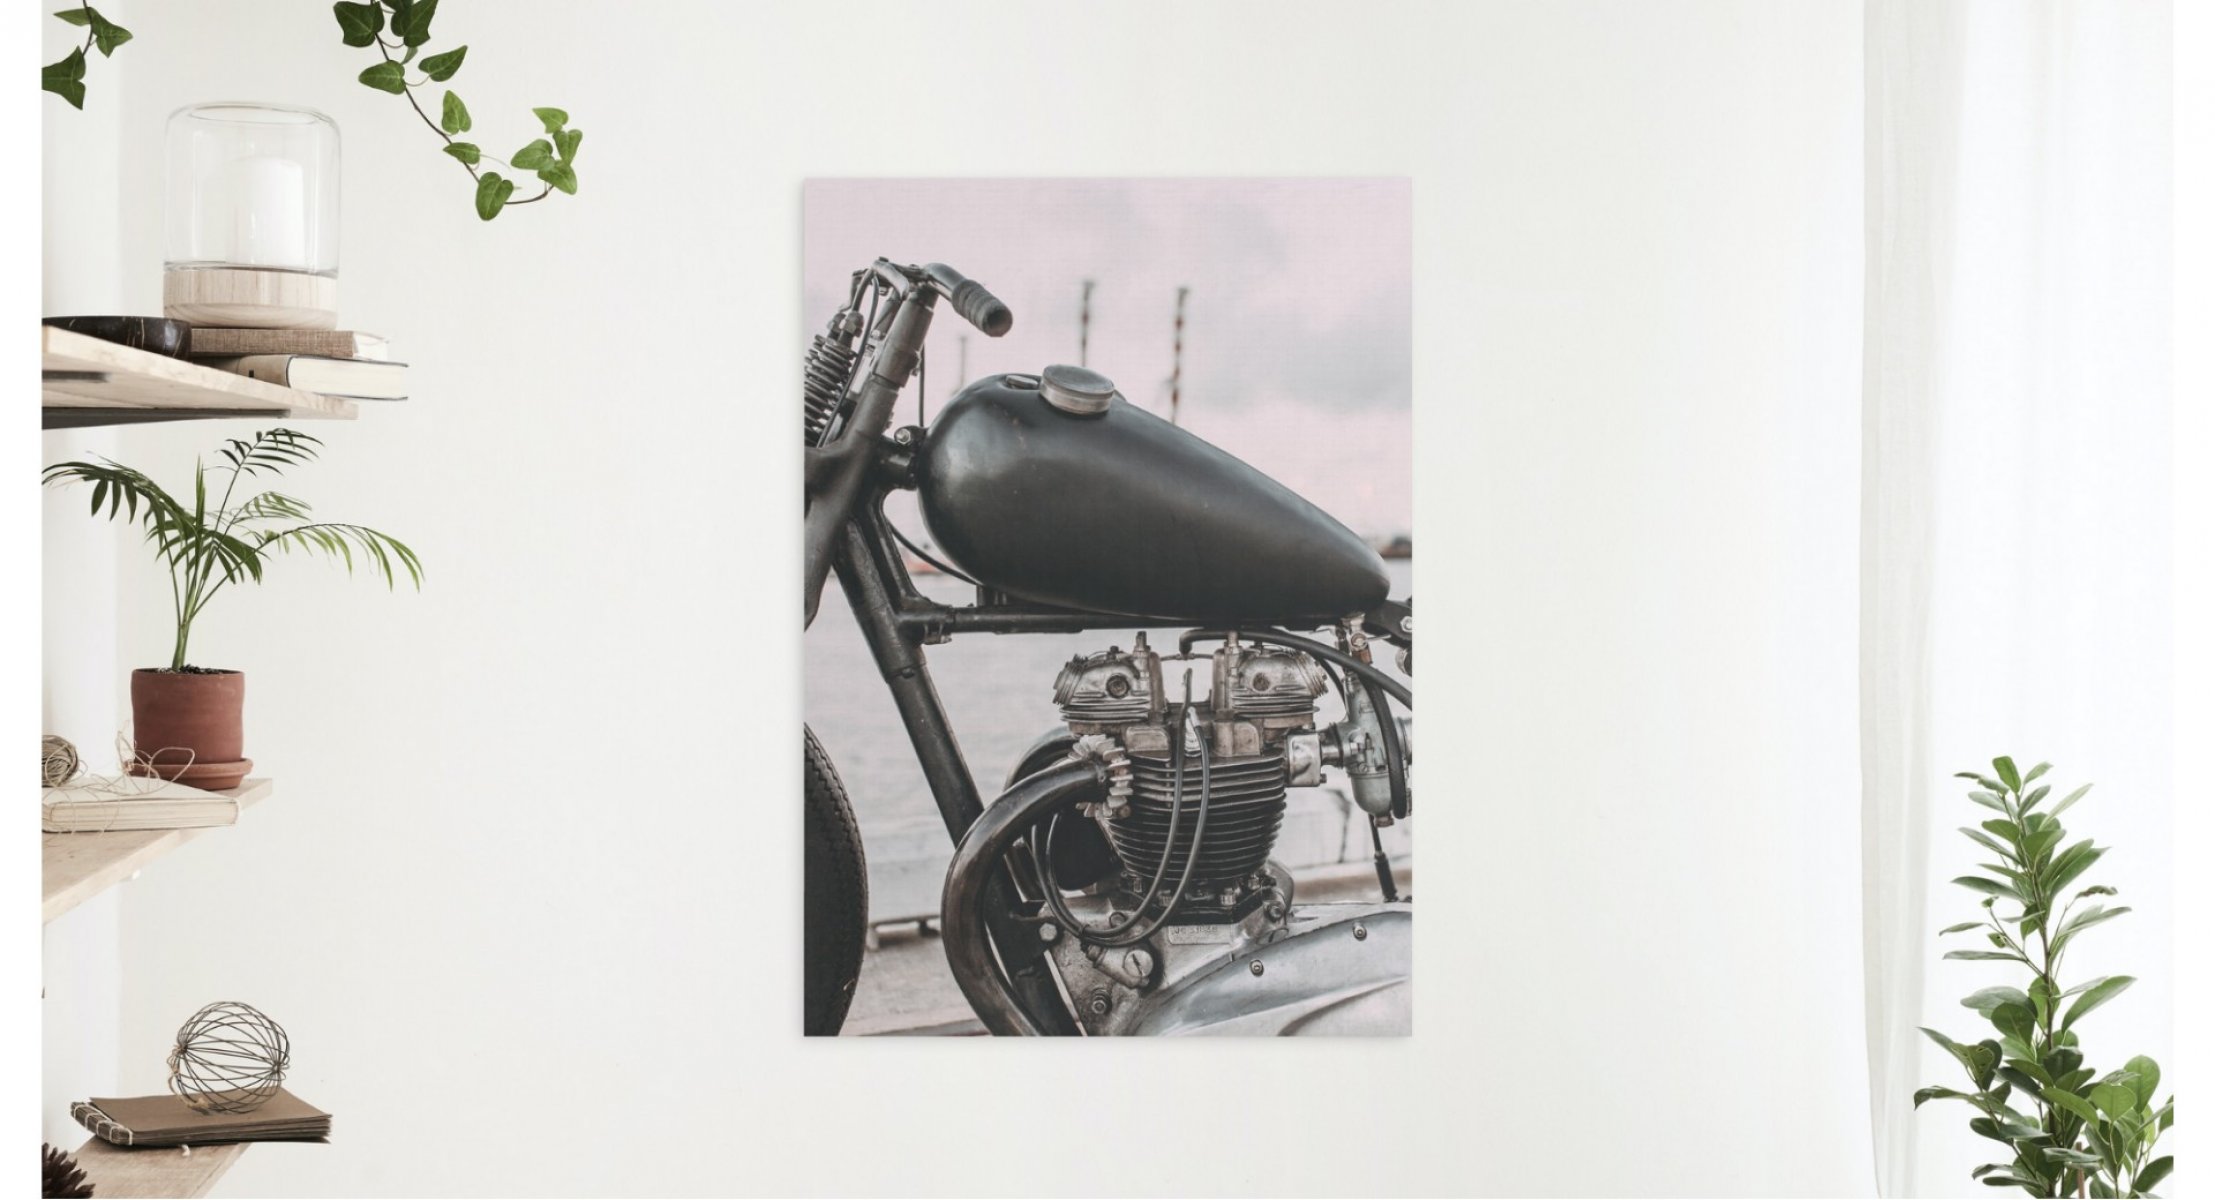 Velkoformátová fotka s motorkou jako dárek ke dni otců.